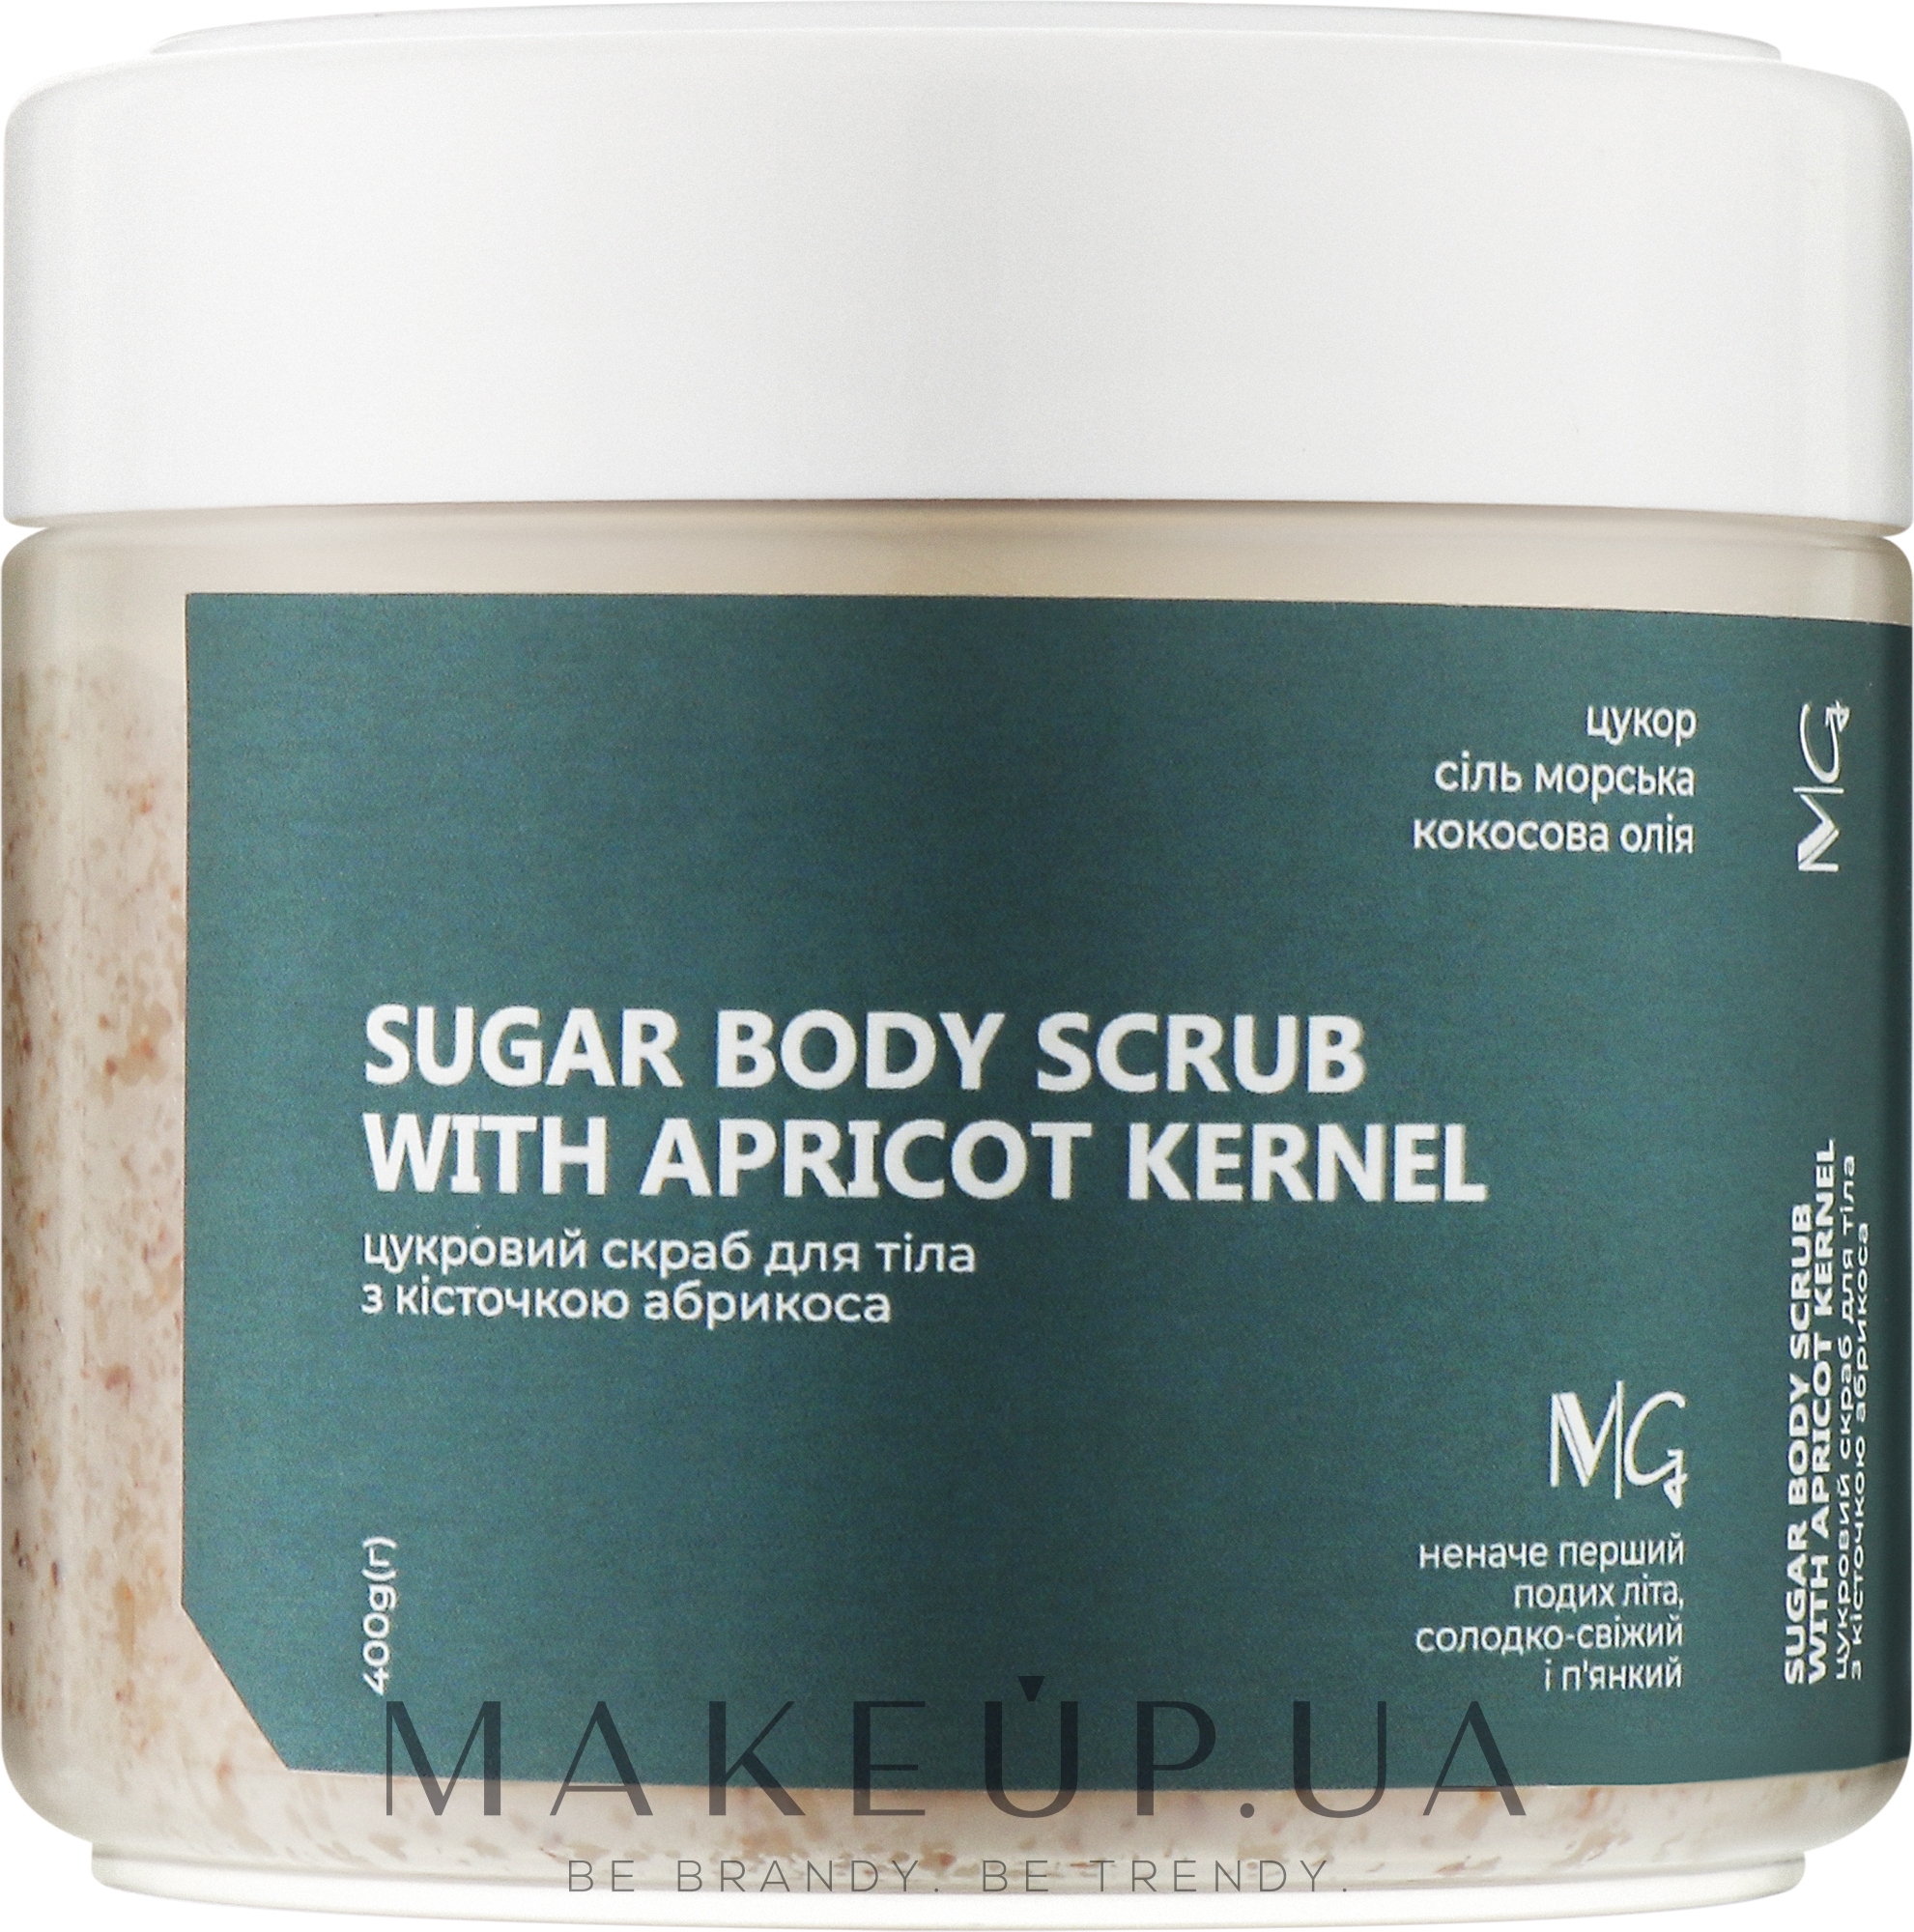 Цукровий скраб для тіла з кісточкою абрикоси - MG Sugar Body Scrub With Apricot Kernel — фото 400g